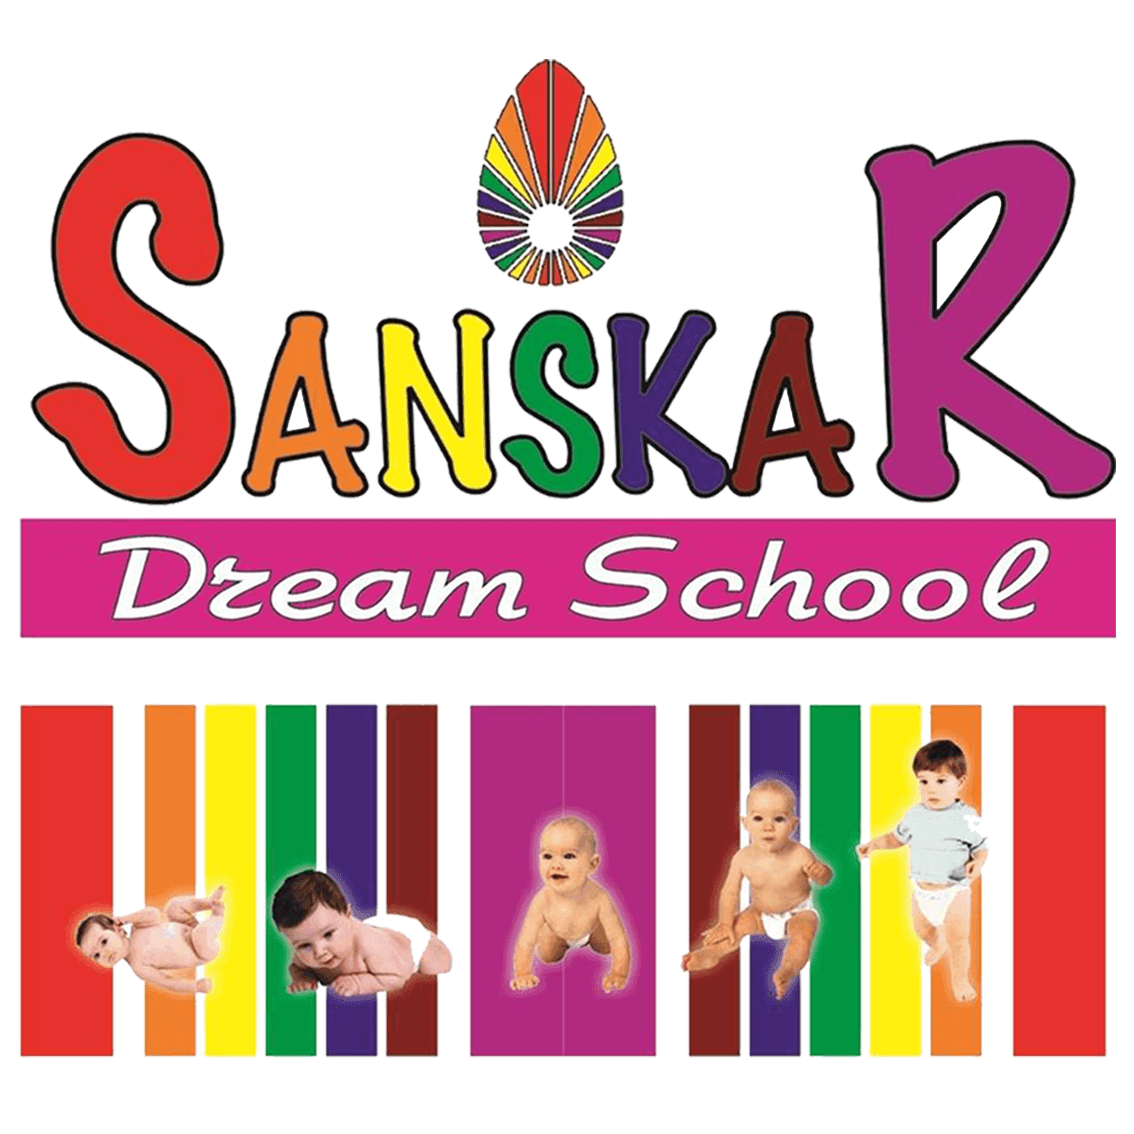 Sanskar Dream School